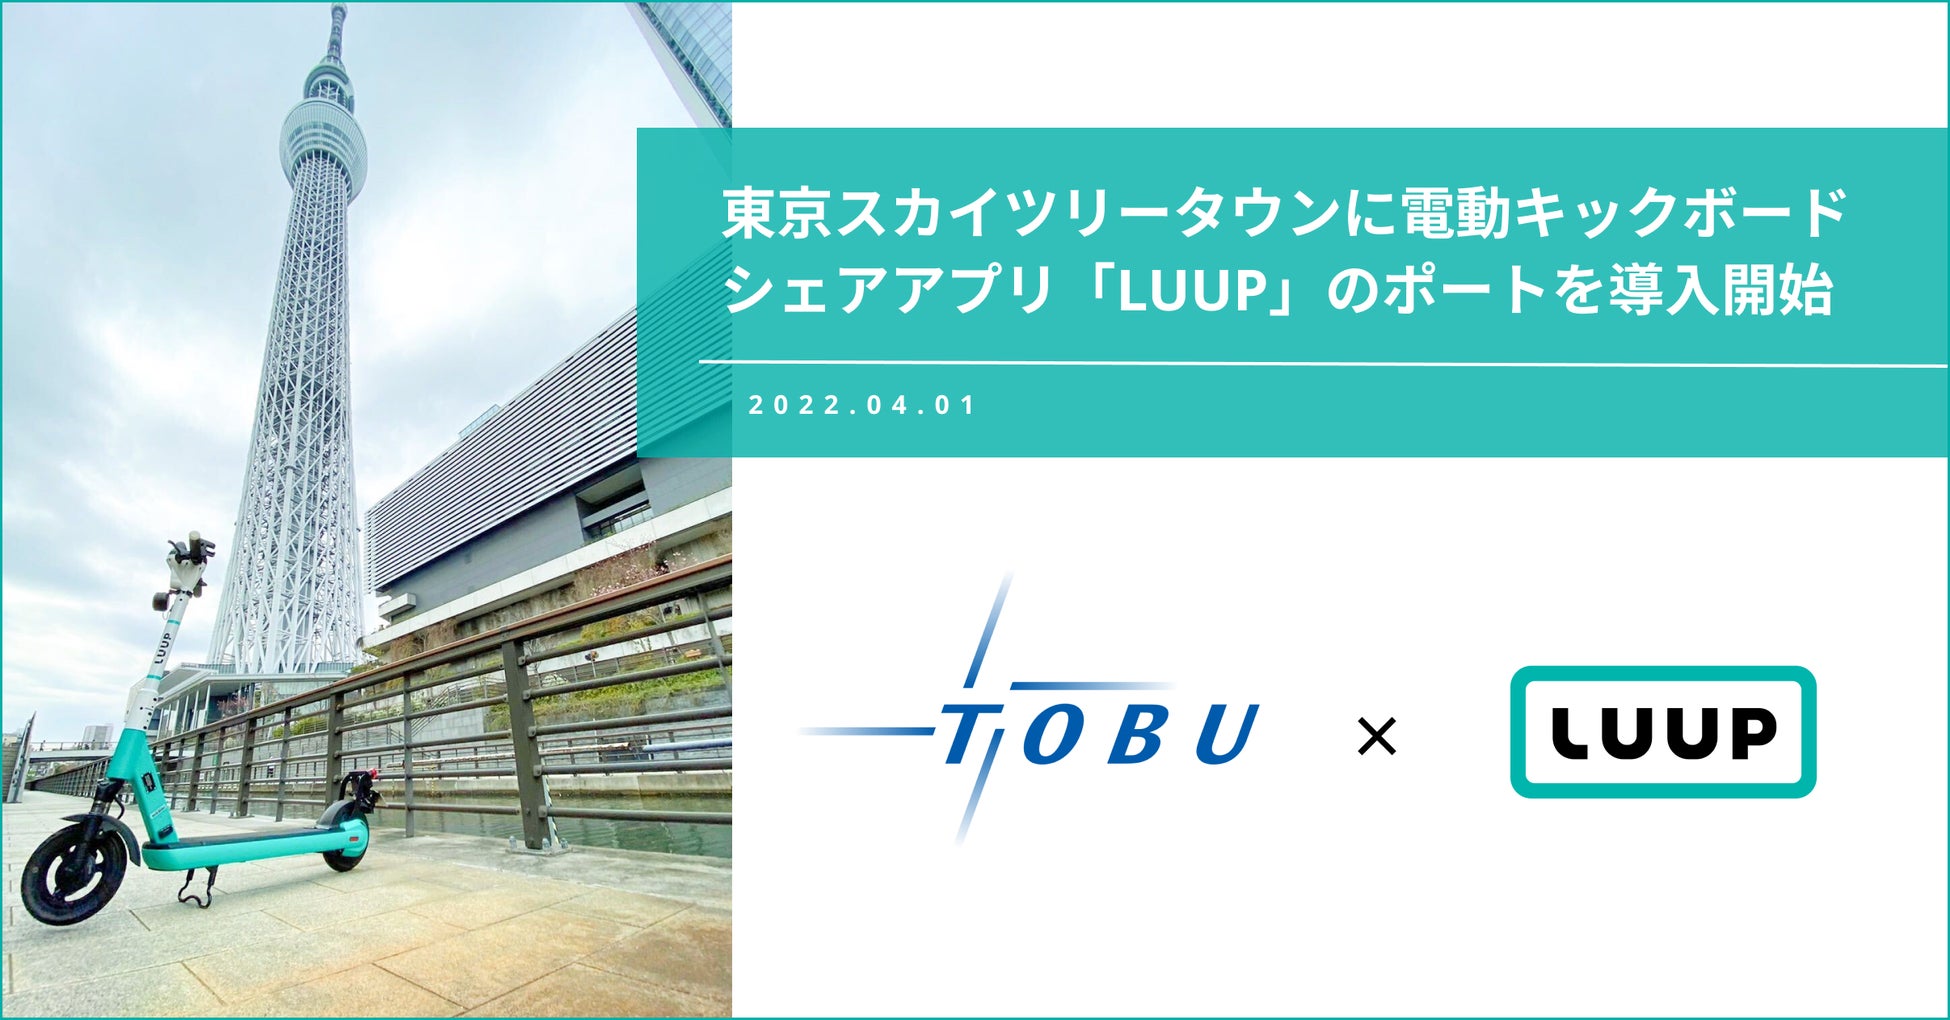 東京スカイツリータウンに、電動キックボードシェアアプリ「LUUP」のポート導入が開始